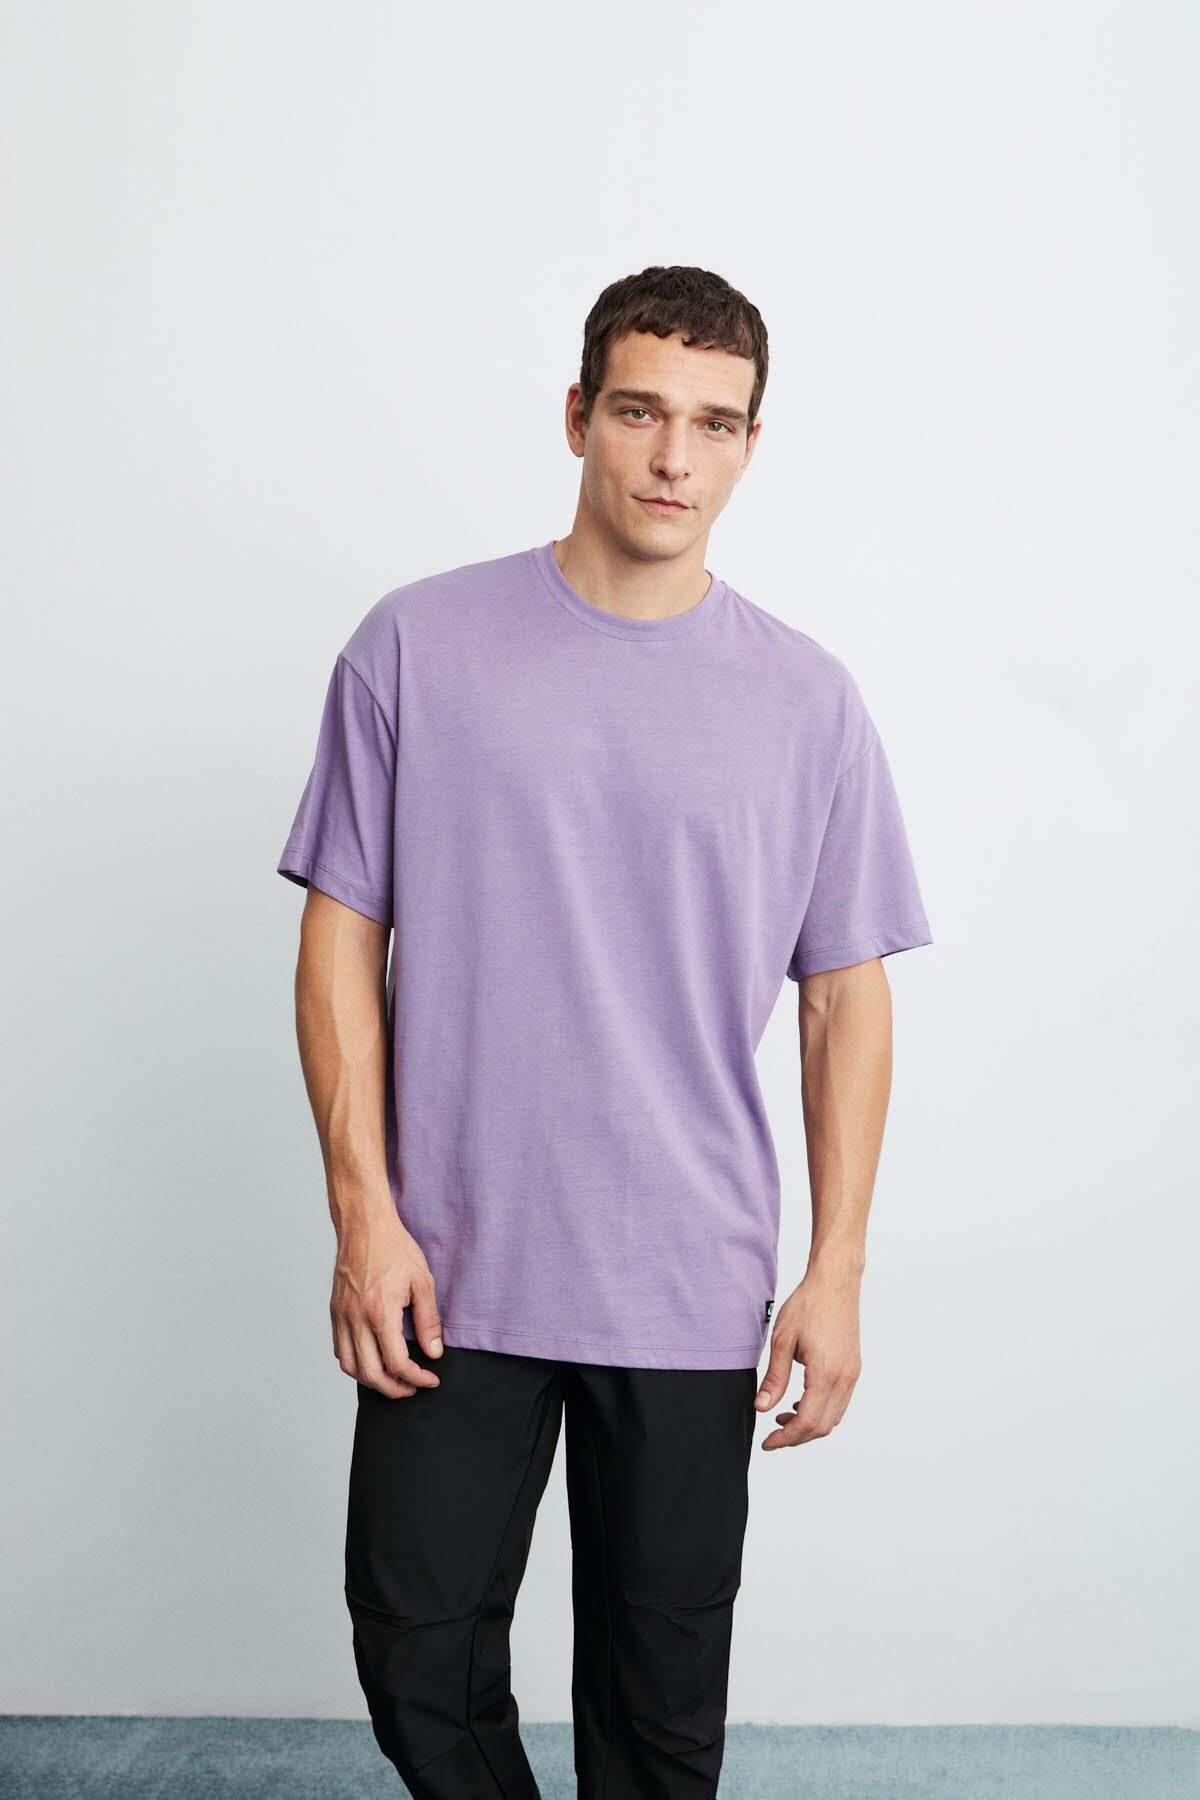 Мужская футболка оверсайз Jett из 100% хлопка с плотной текстурой GRIMELANGE, фиолетовый футболка мужская оверсайз из хлопка xs